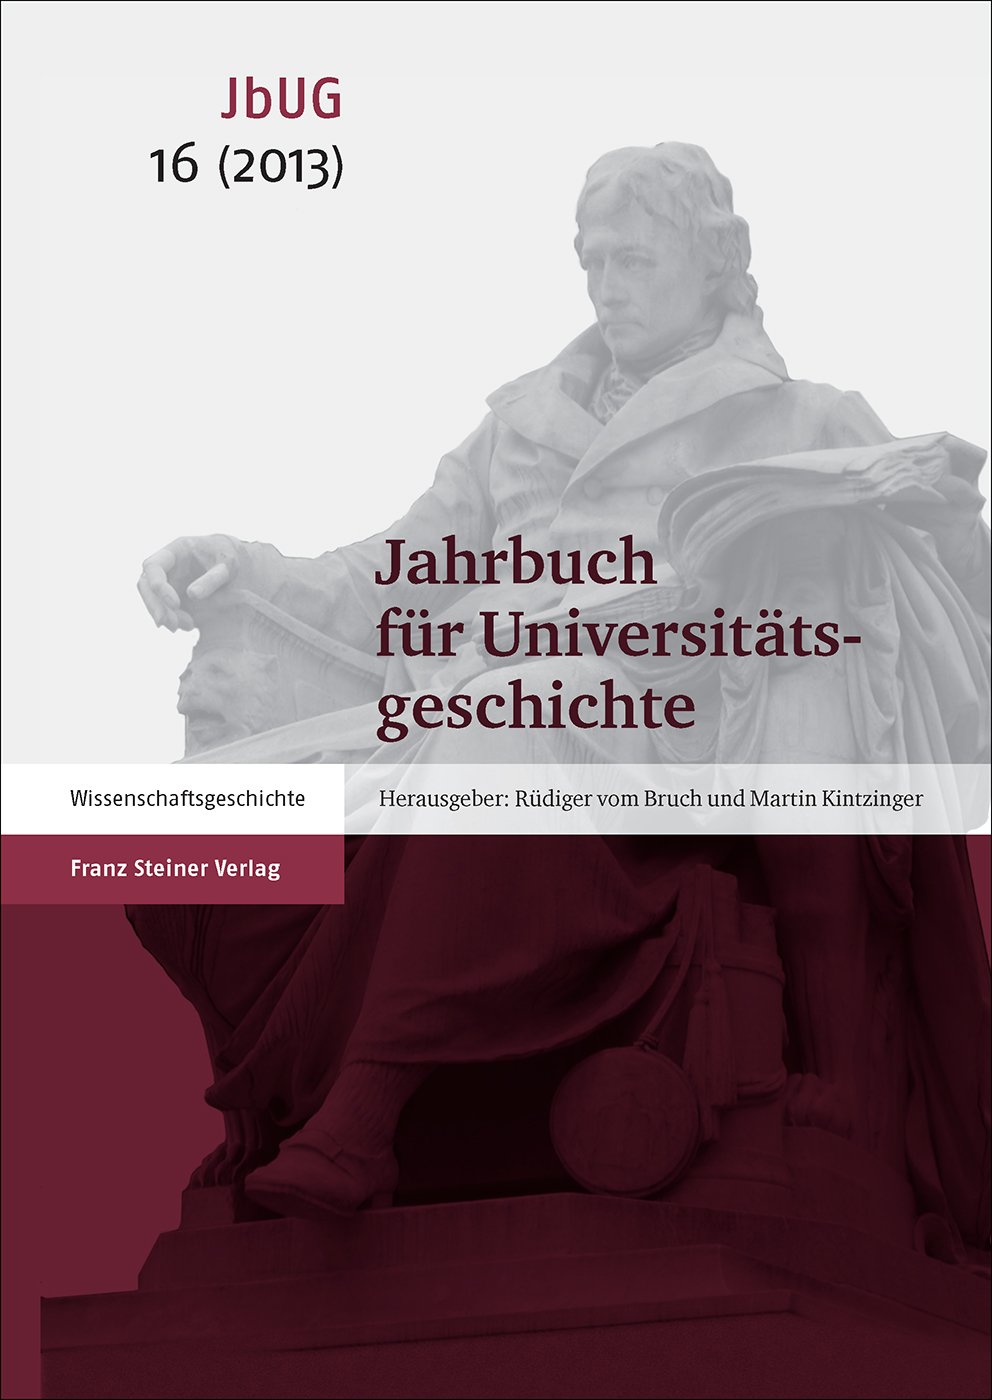 Jahrbuch für Universitätsgeschichte 16 (2013)